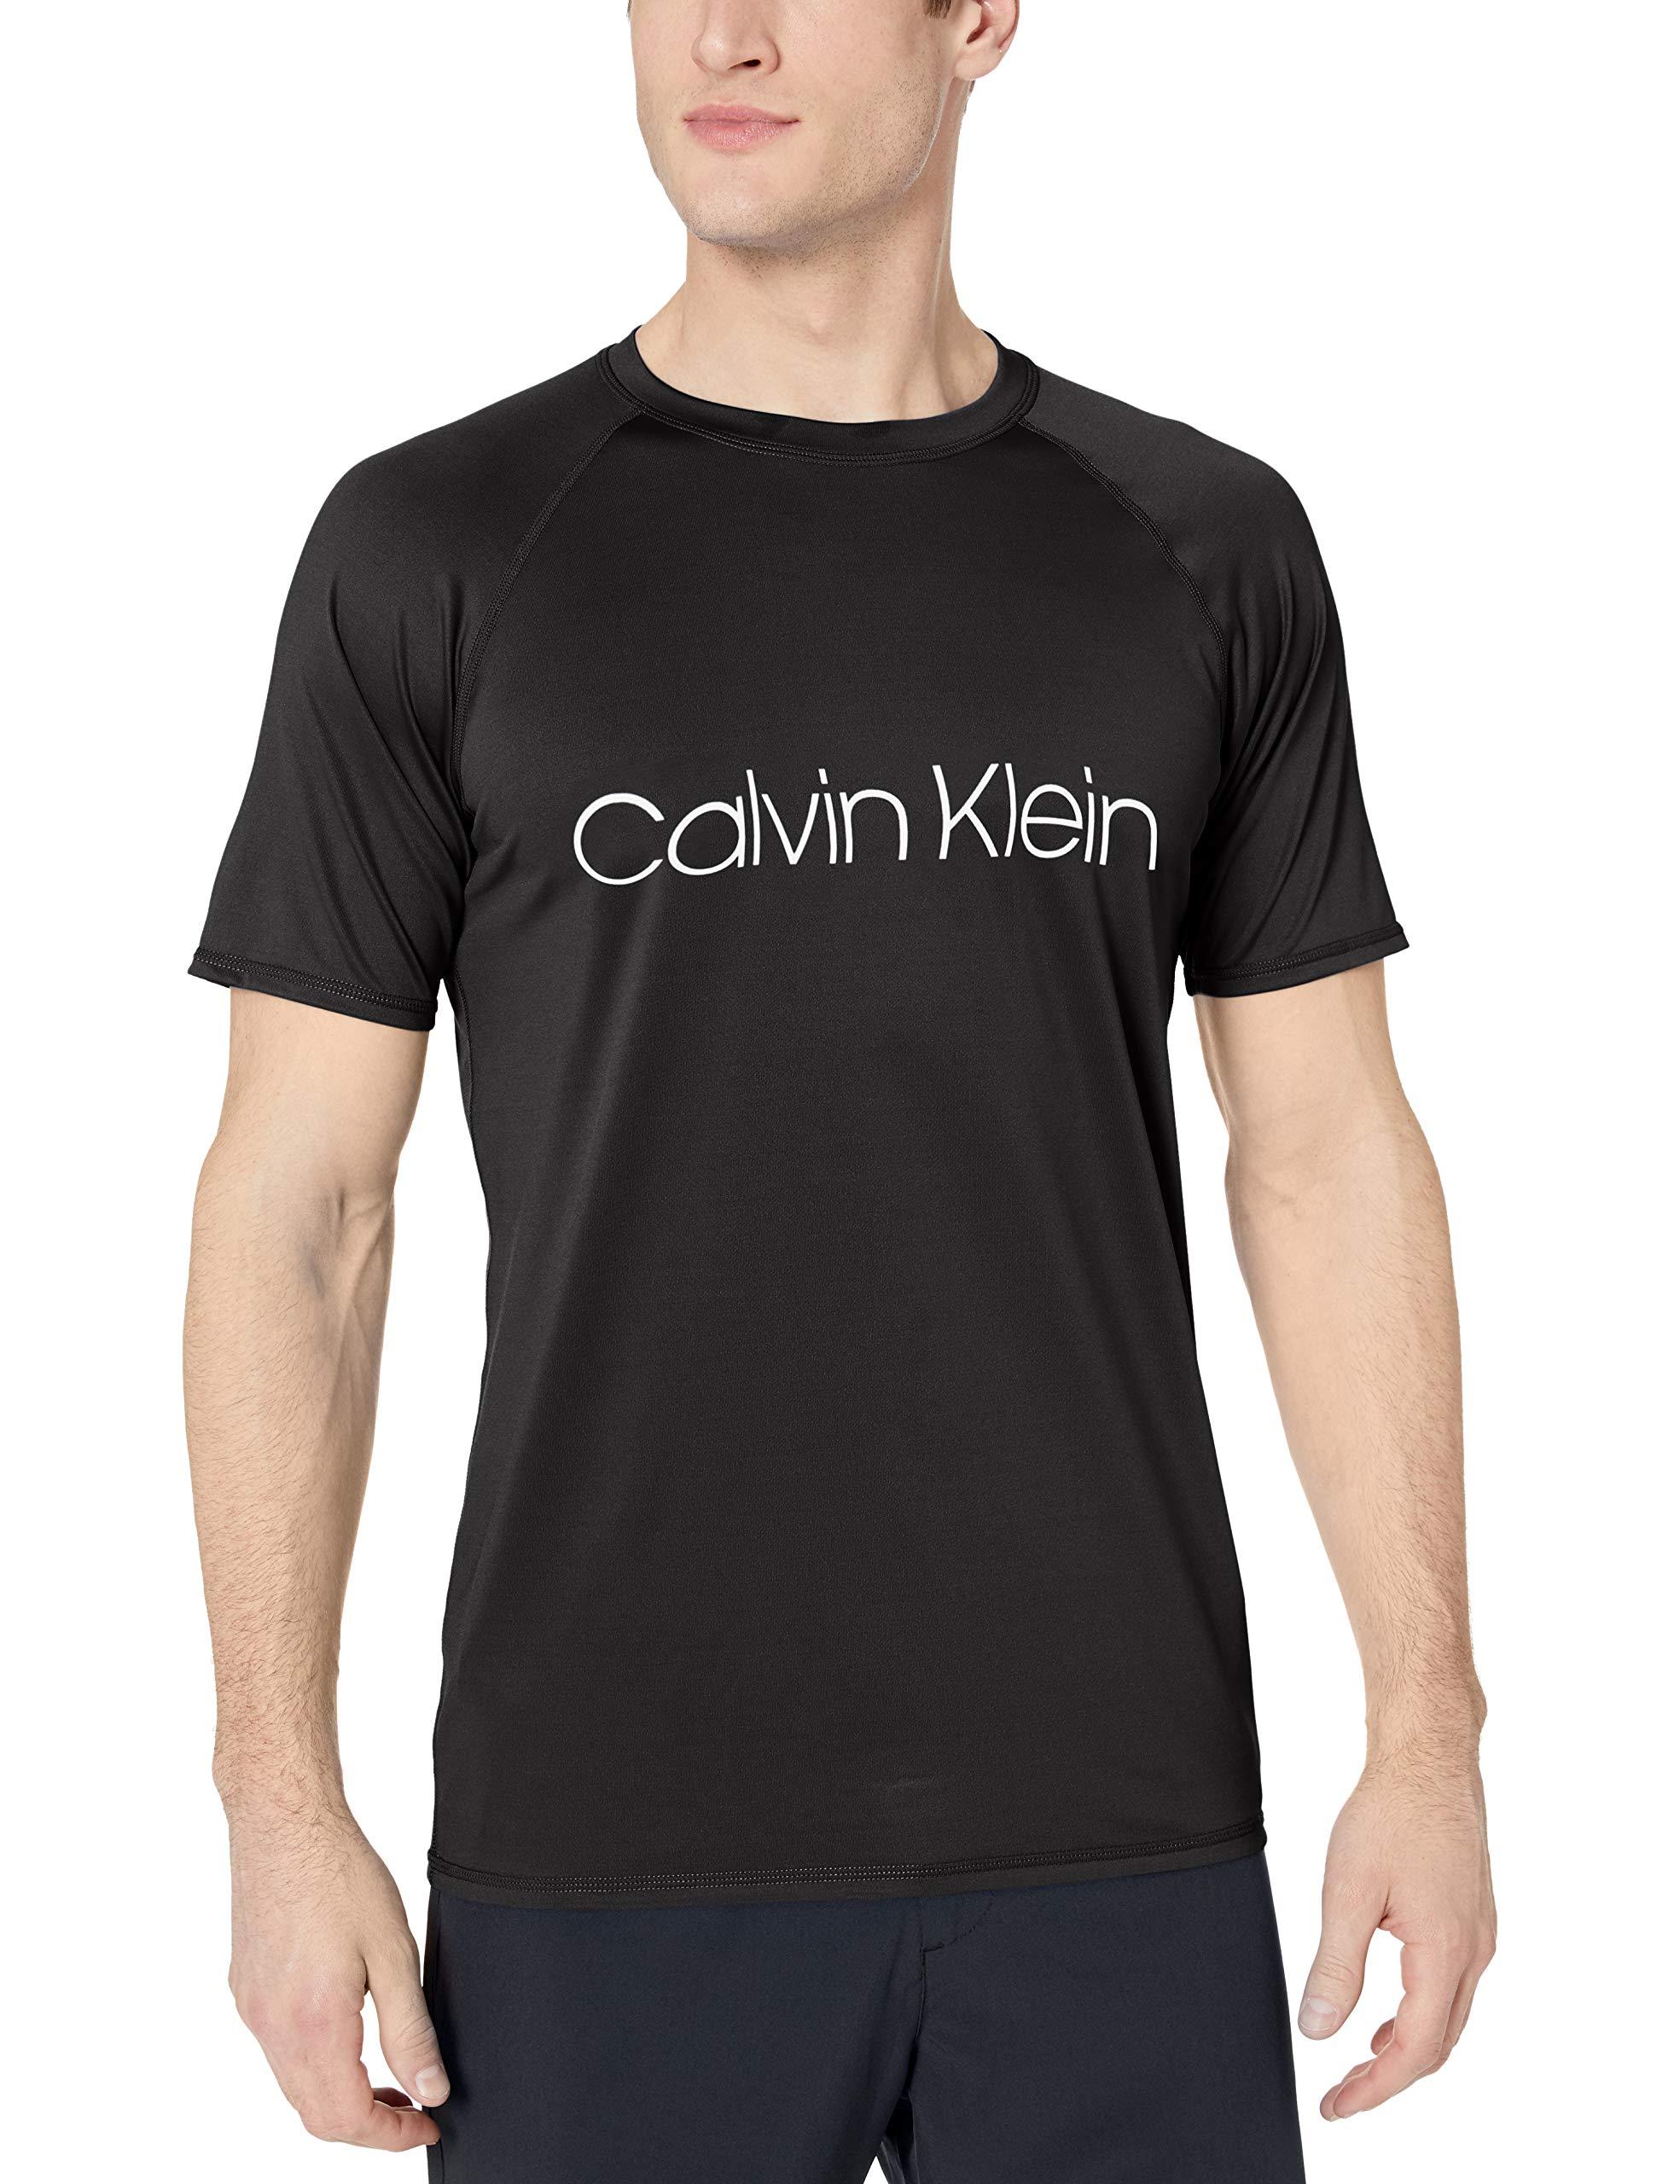 Descubrir 52+ imagen calvin klein swim shirts - Thptnganamst.edu.vn